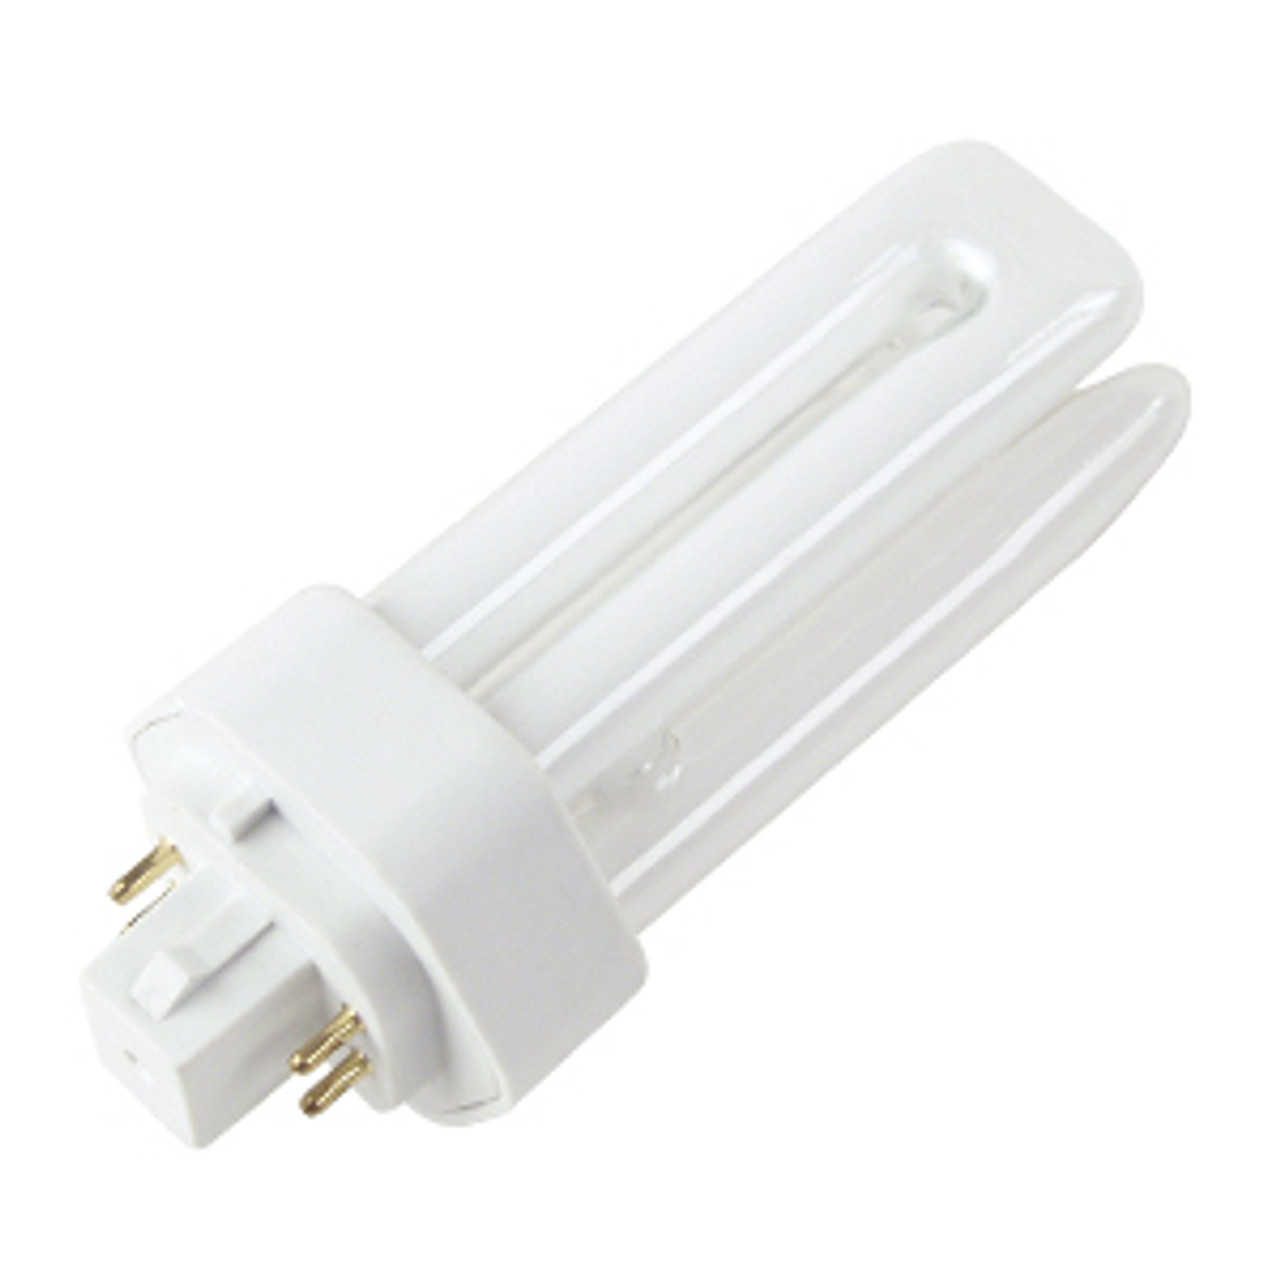 Lighting and Supplies LS-81814 Plt13/35K/Gx24Q-1 4 Pin